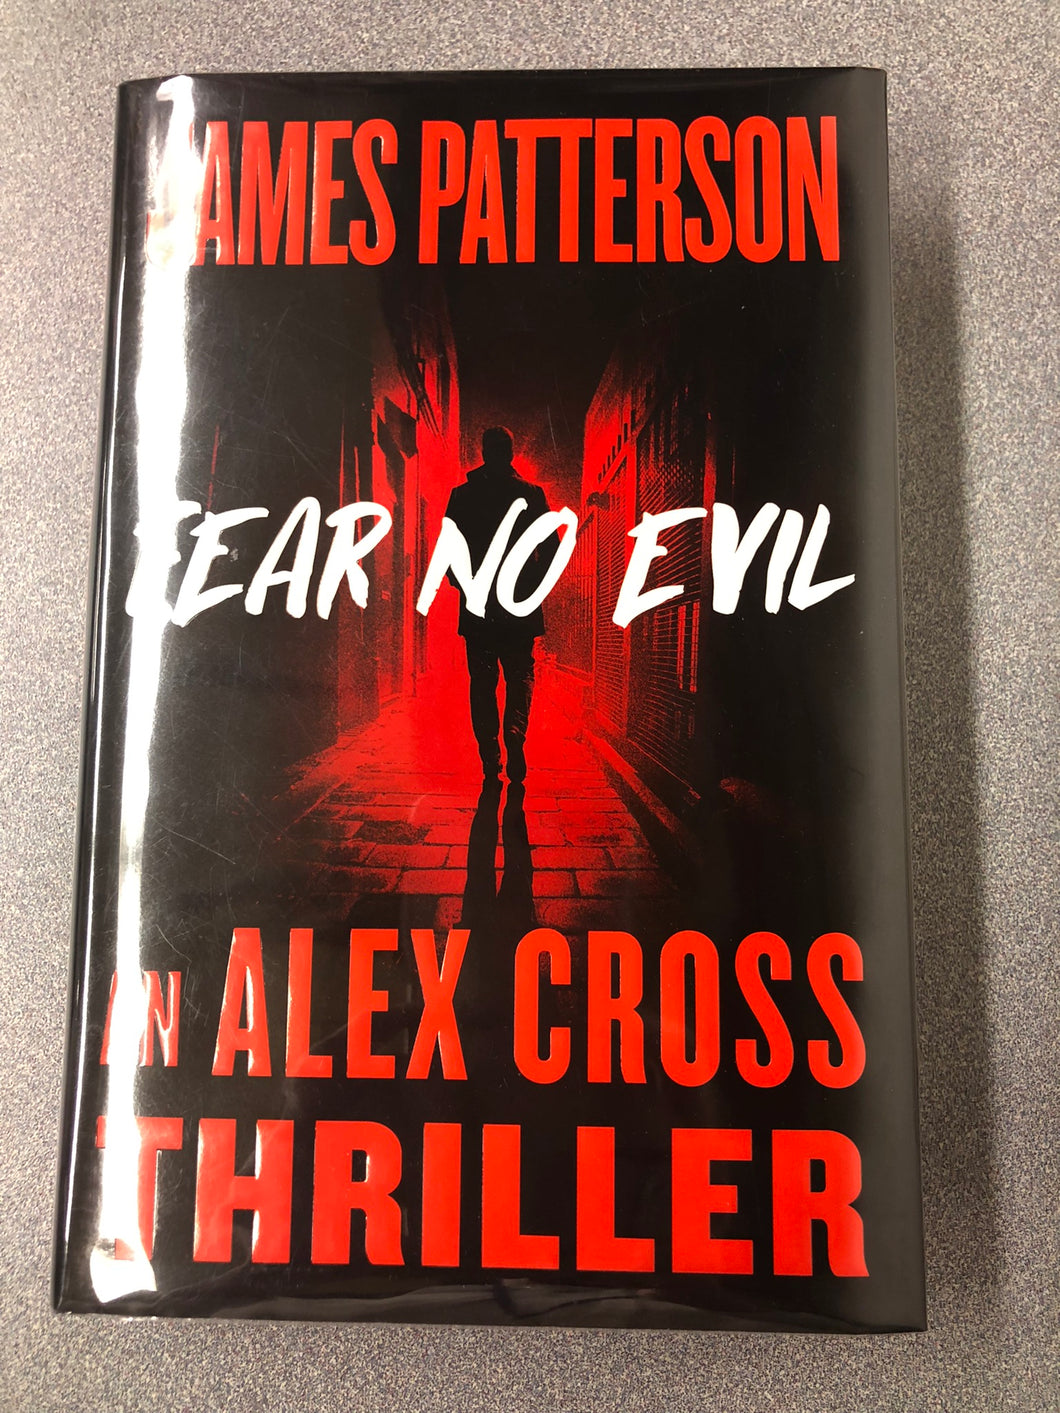 Patterson, James, Fear No Evil (Alex Cross, 27) – MY 9/23